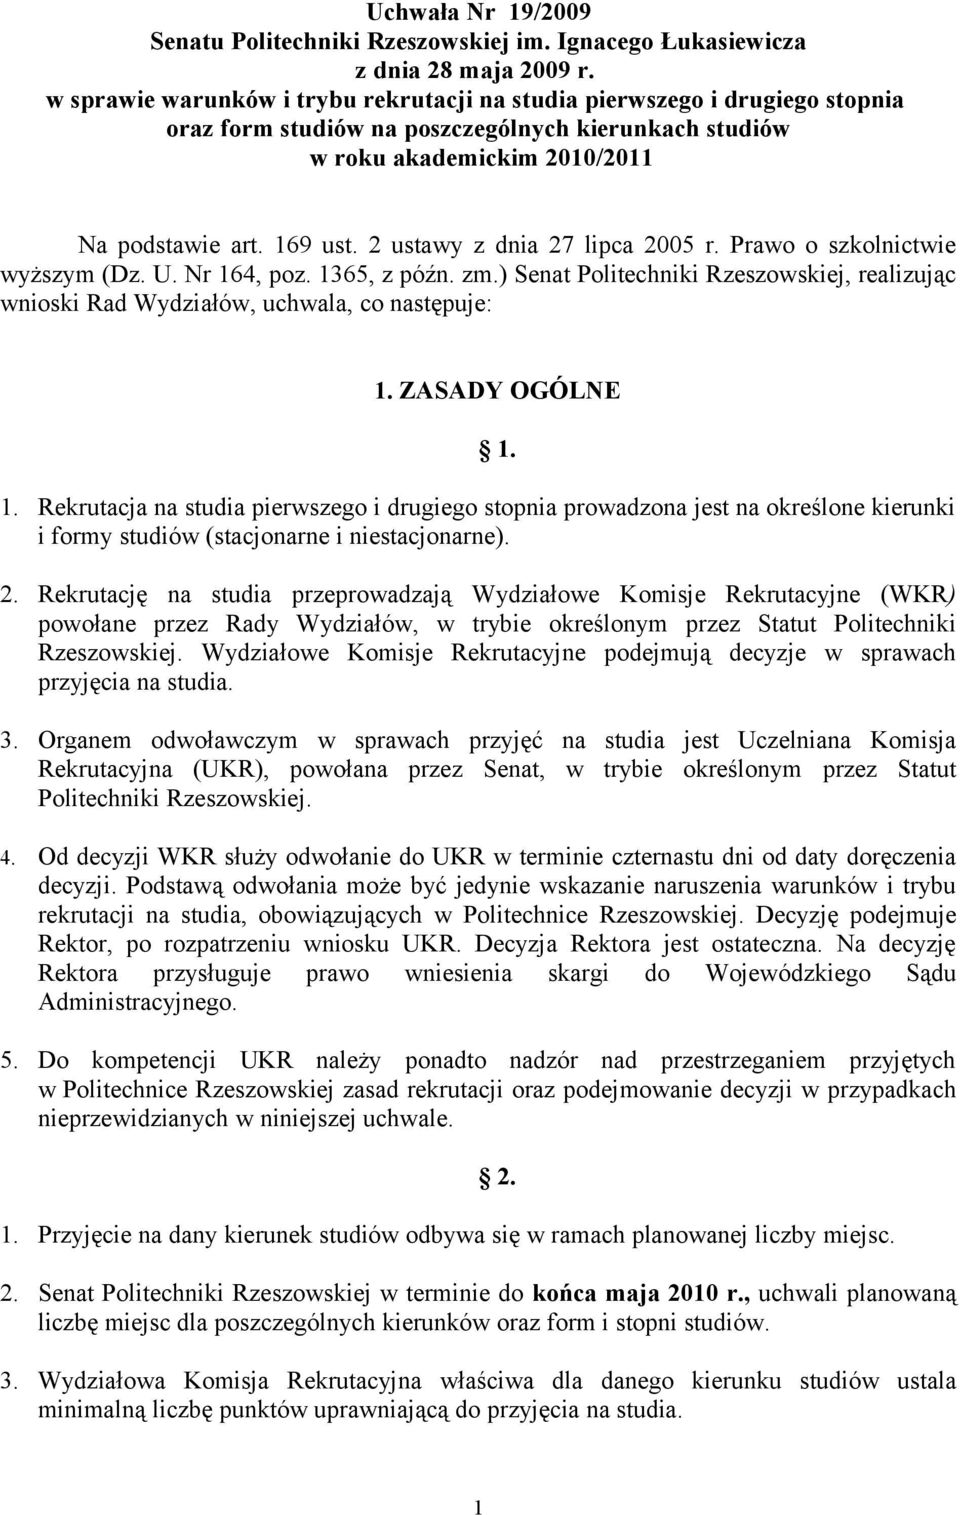 2 ustawy z dnia 27 lipca 2005 r. Prawo o szkolnictwie wyższym (Dz. U. Nr 164, poz. 1365, z późn. zm.) Senat Politechniki Rzeszowskiej, realizując wnioski Rad Wydziałów, uchwala, co następuje: 1.